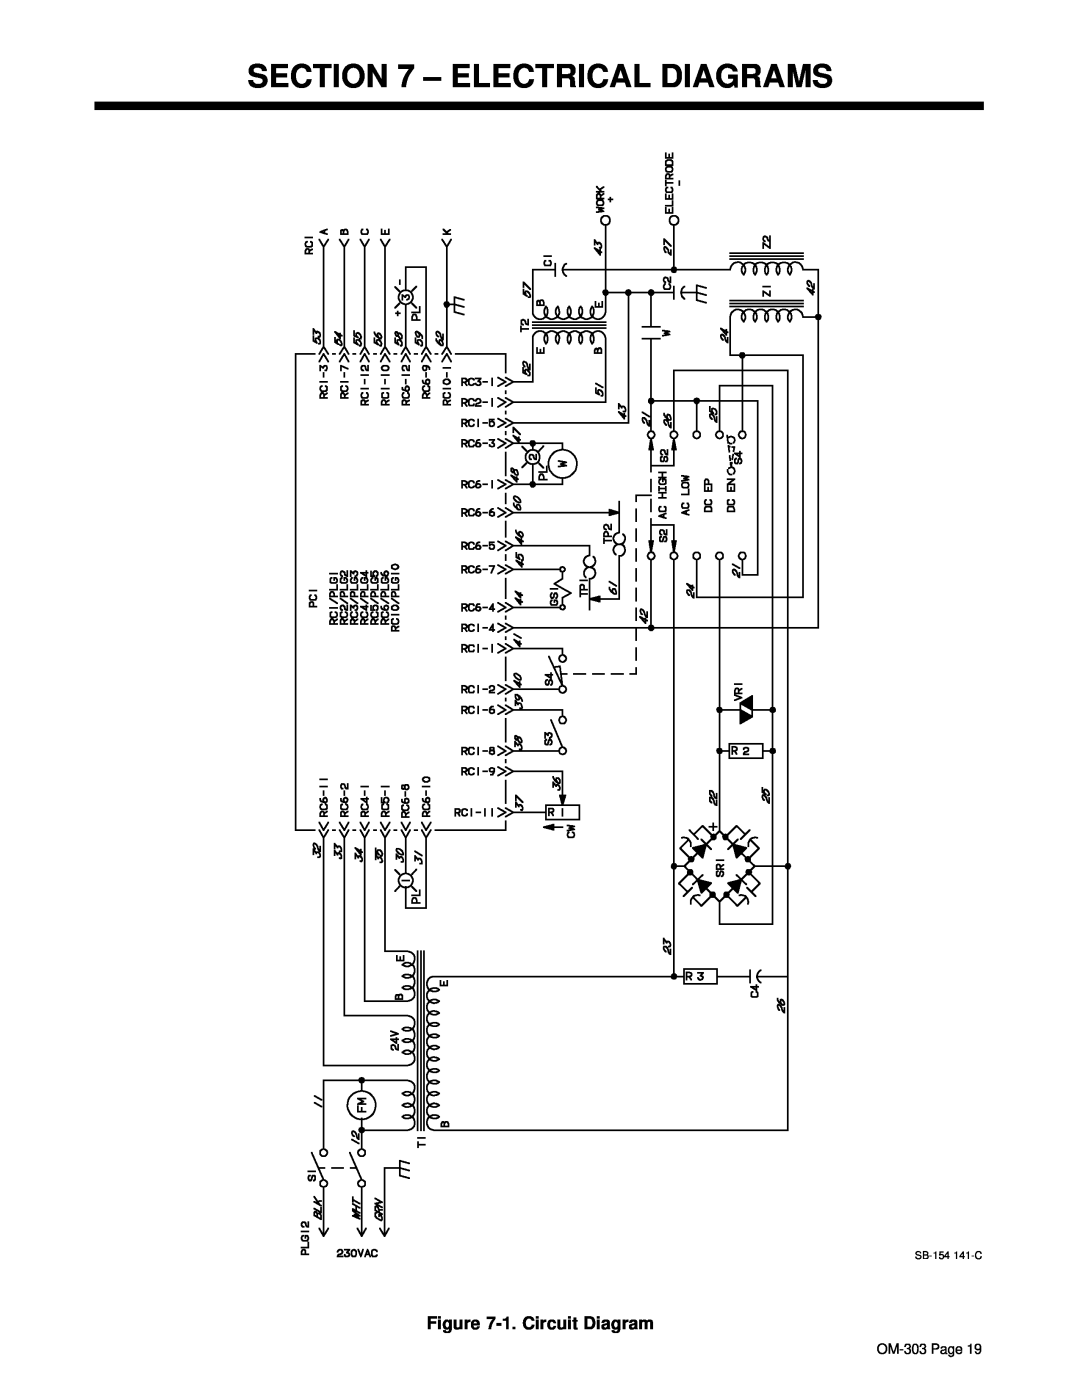 Hobart OM-303 manual Electrical Diagrams, 1. Circuit Diagram 